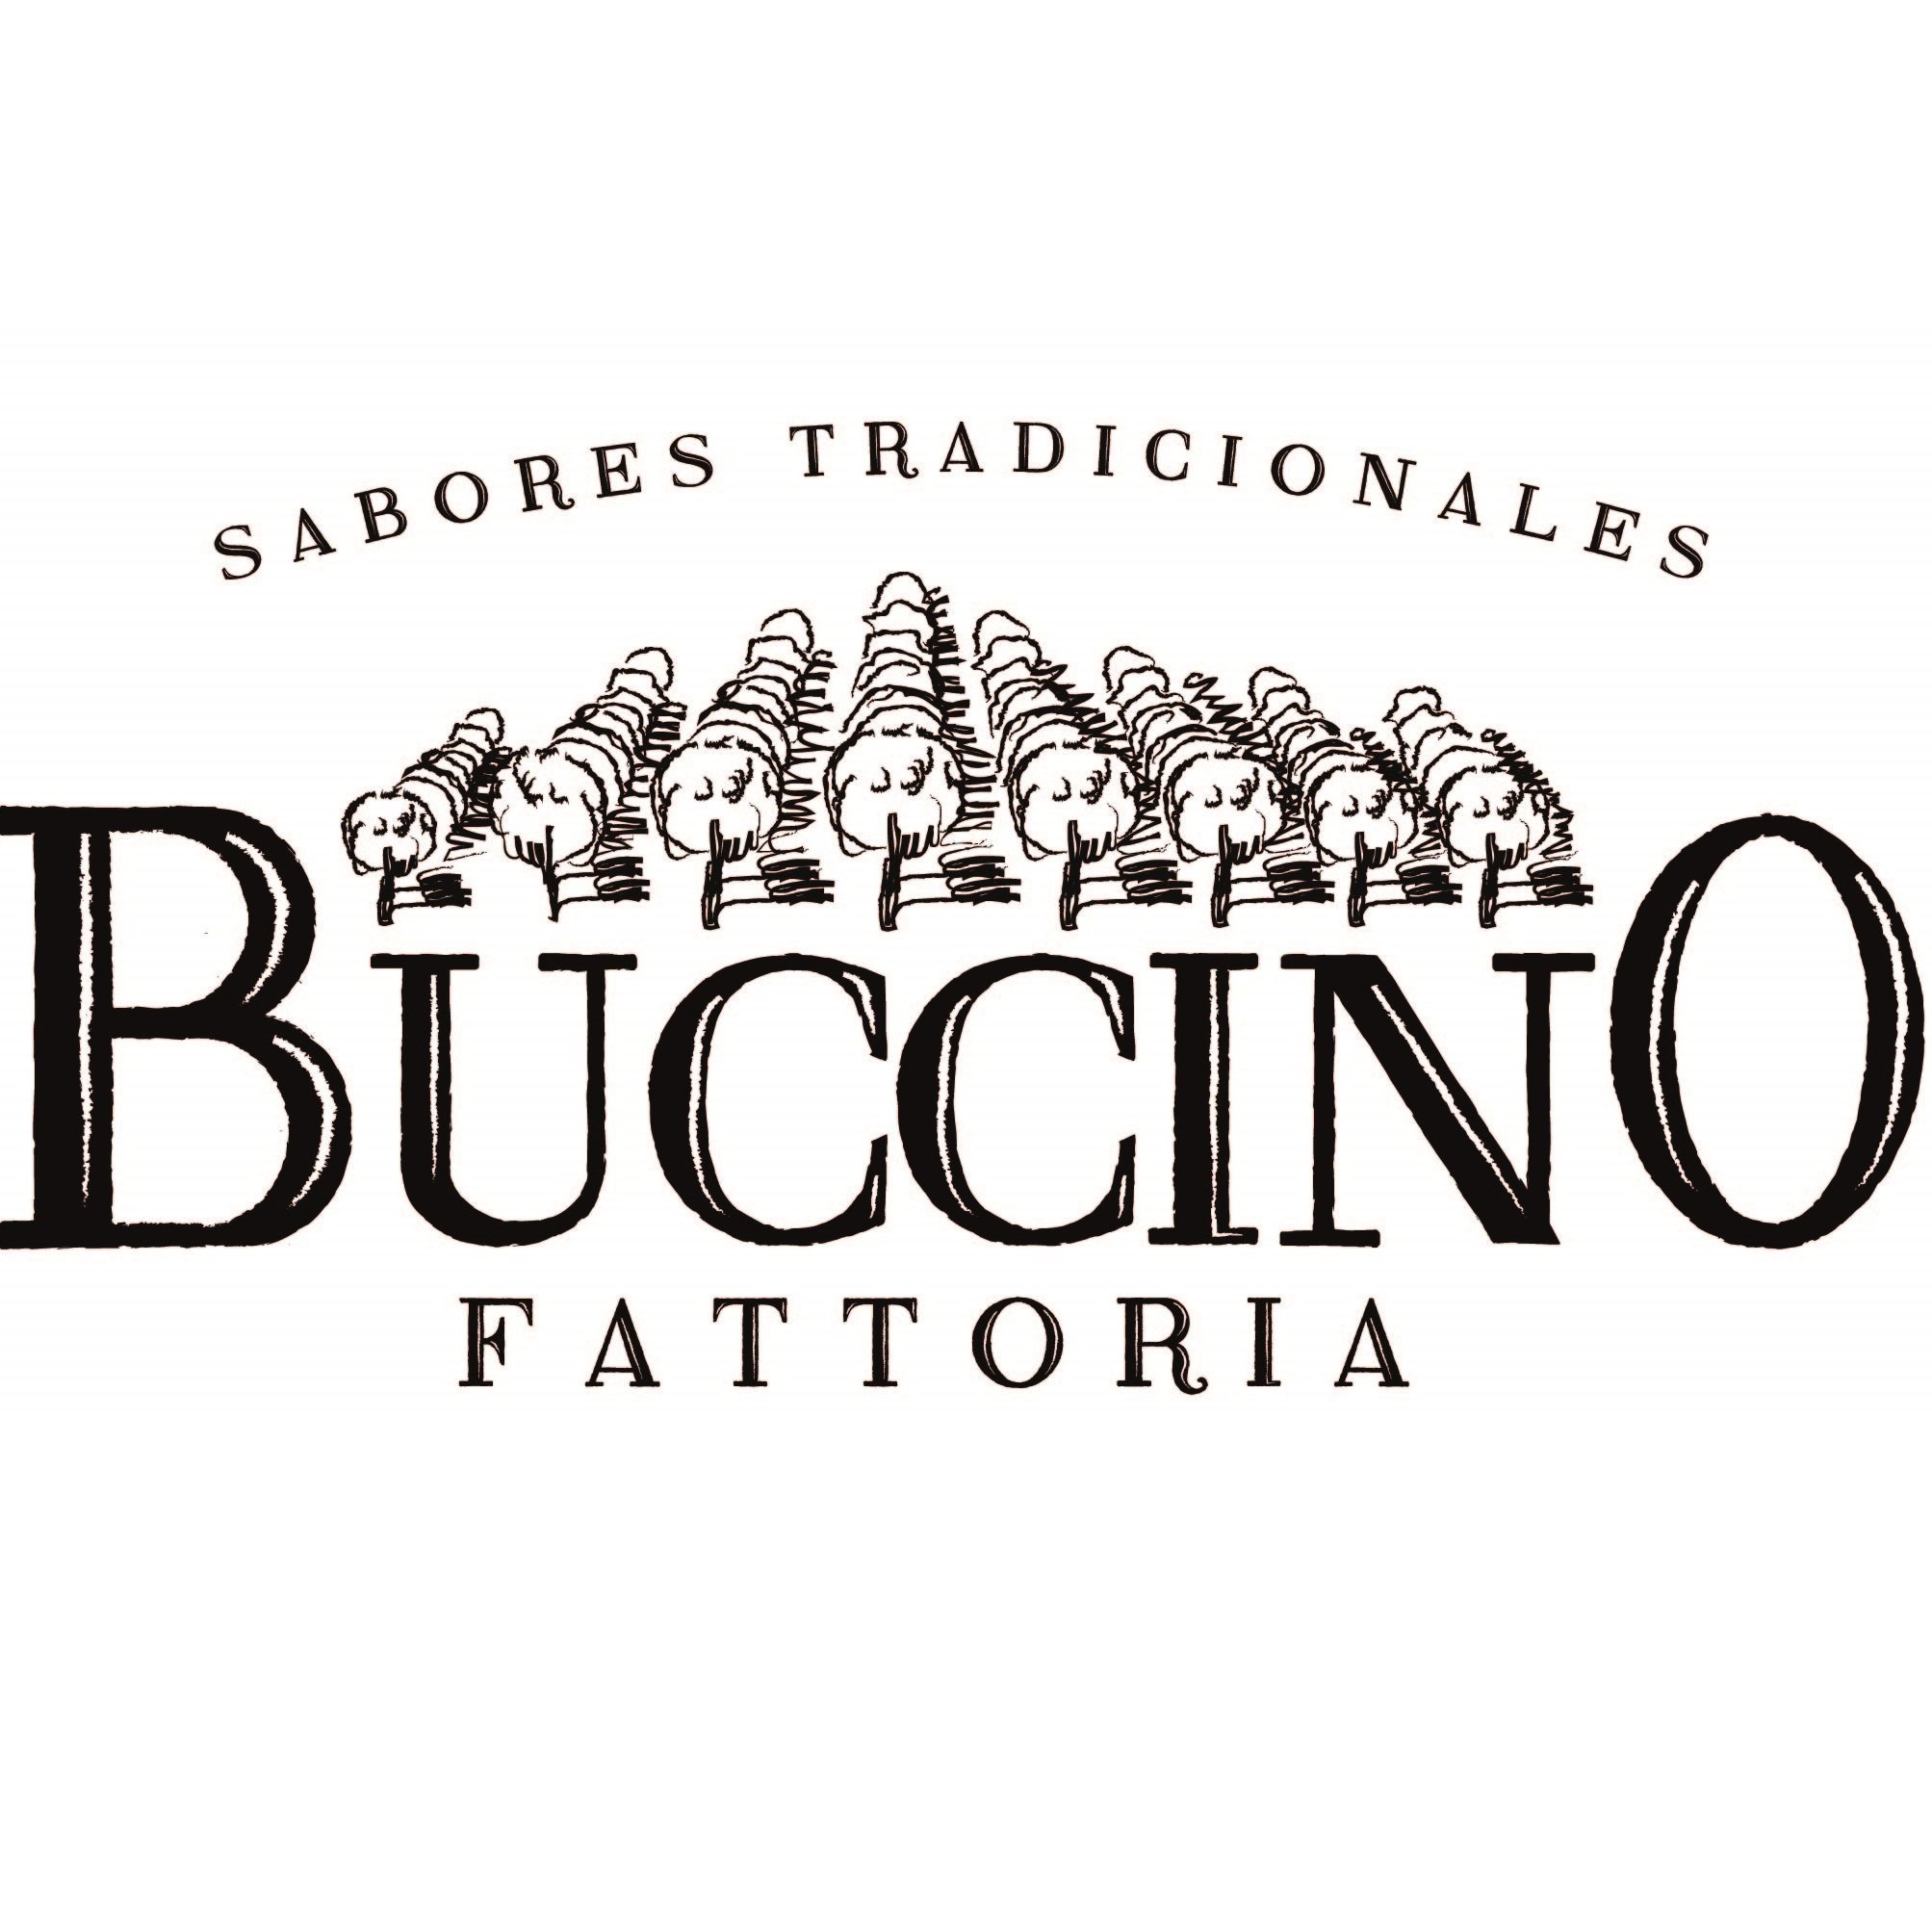 Fattoria Buccino es un emprendimiento de producción de dulces y derivados de membrillo.